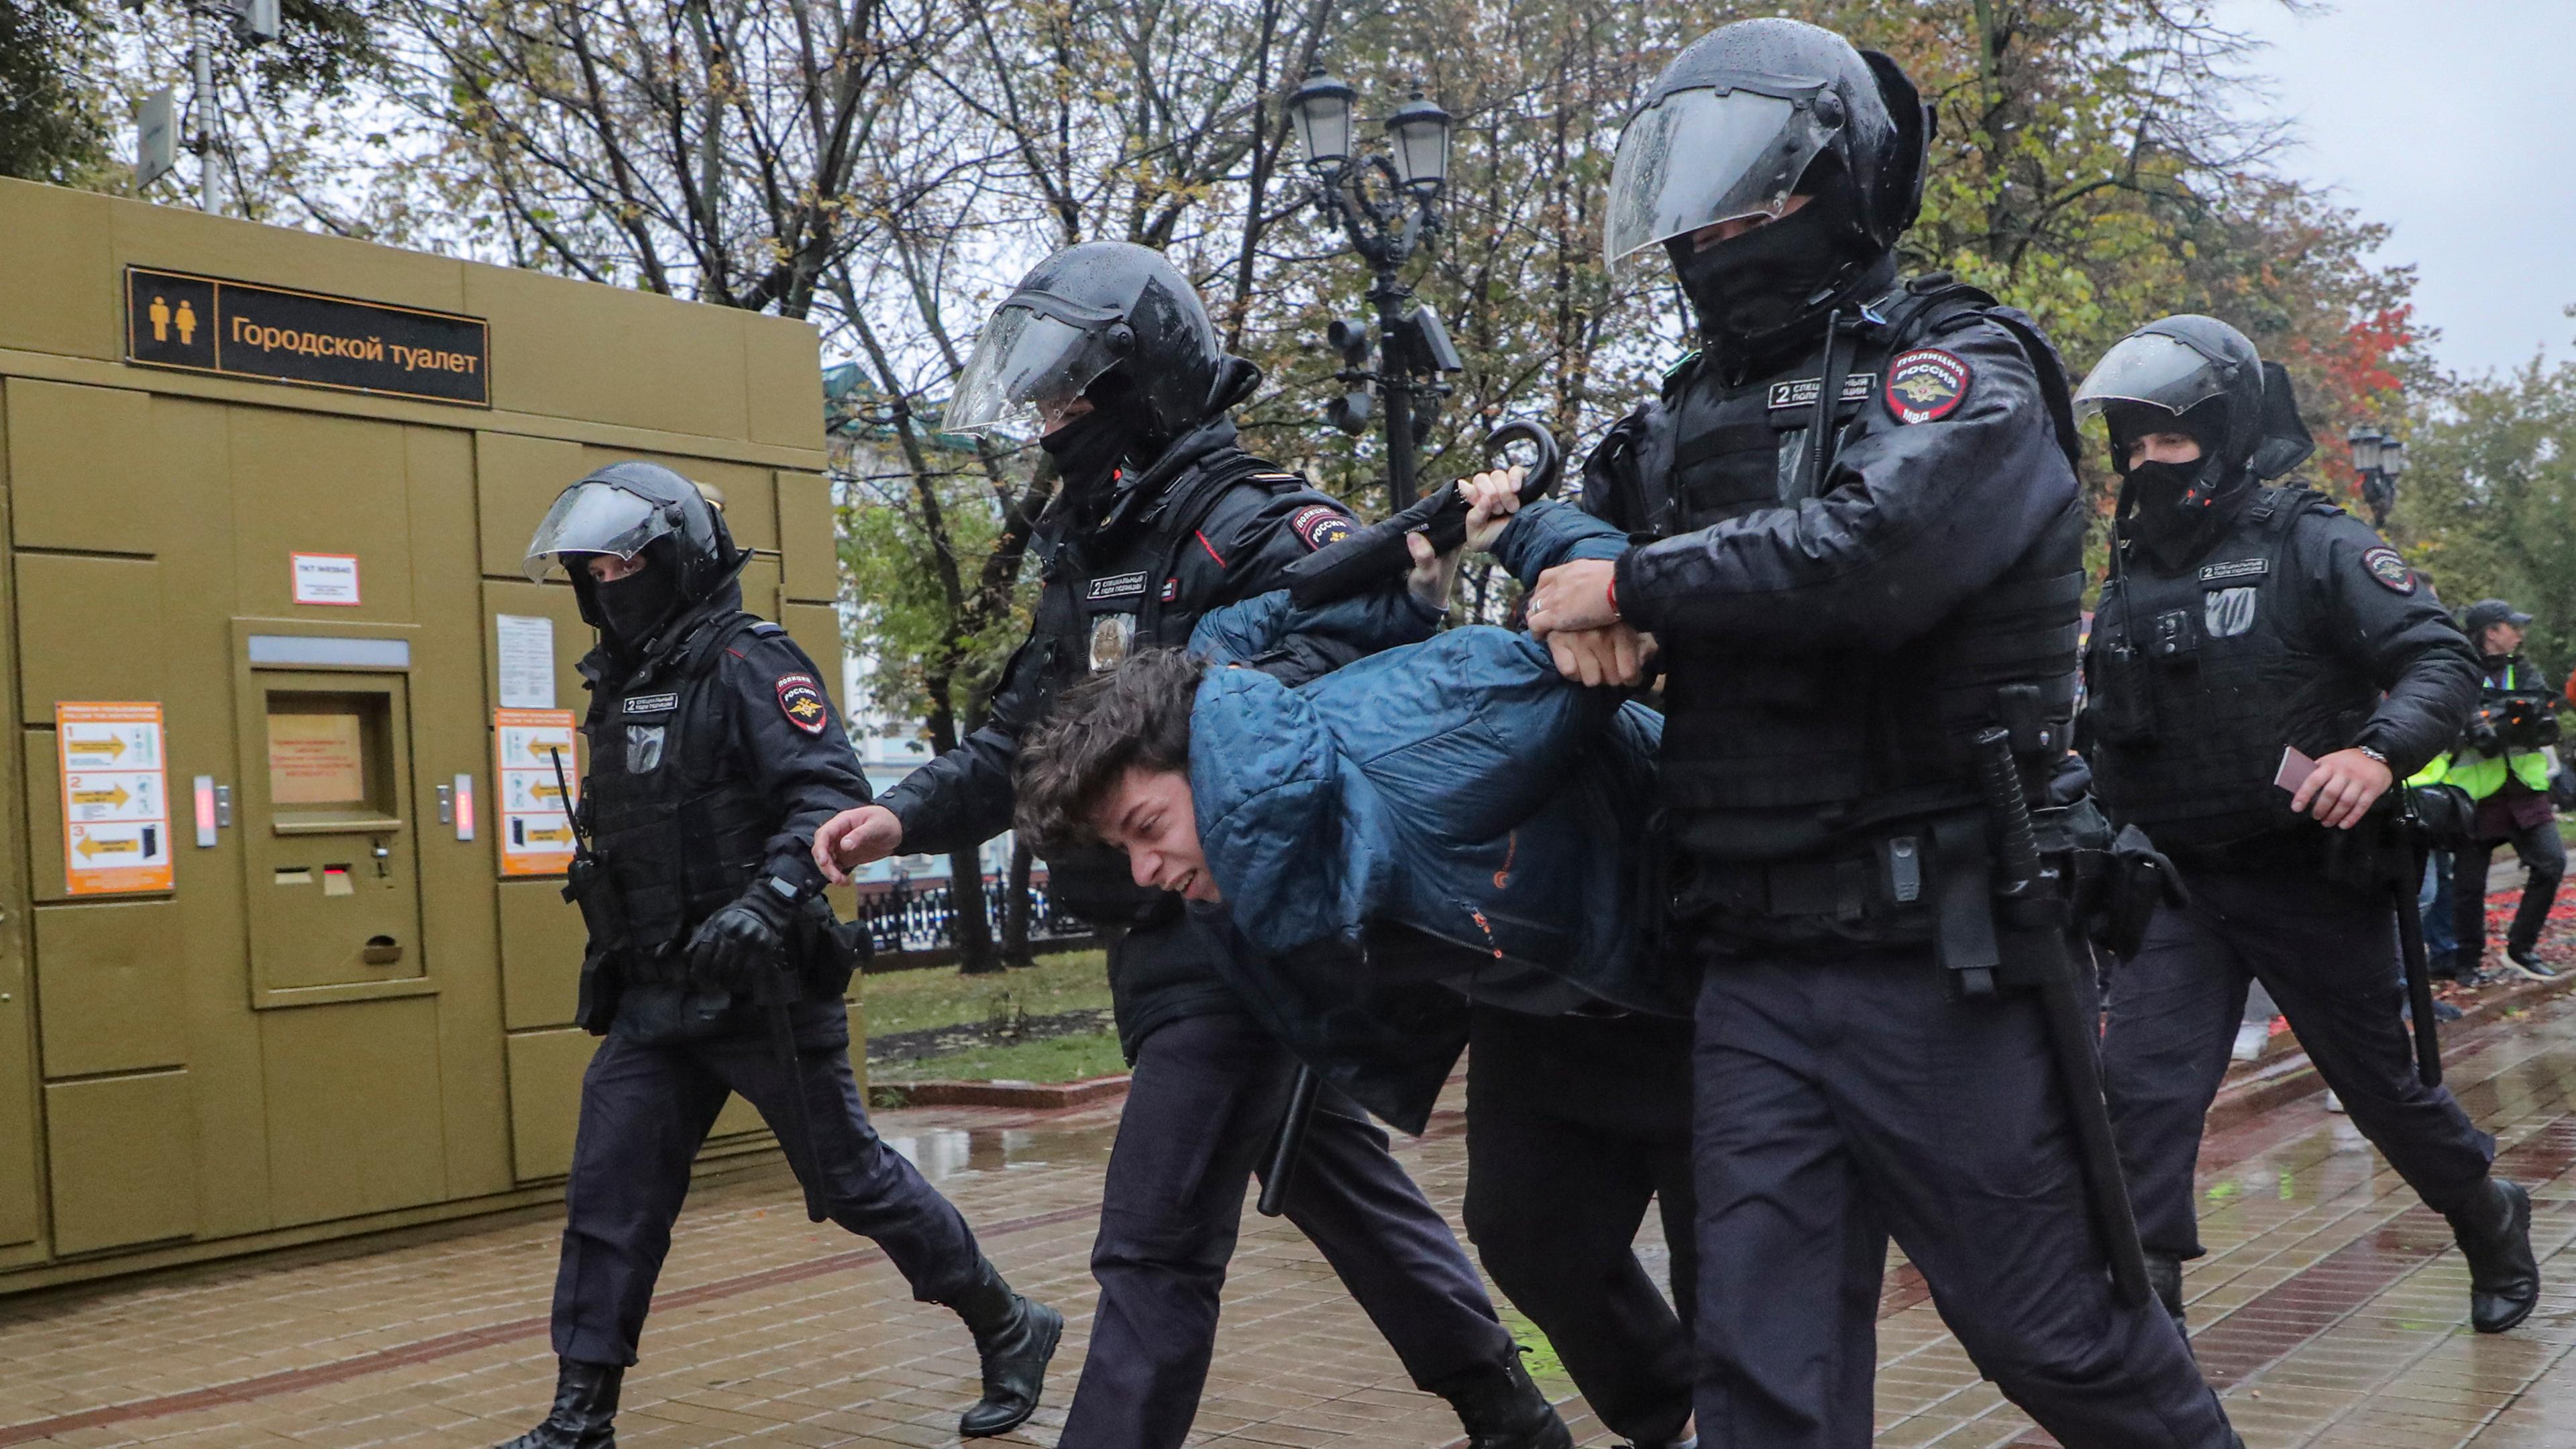 Russische Poilzeikräfte verhaften auf einem unerlaubten Protest in Moskau einen Demonstranten. (Archivbild)